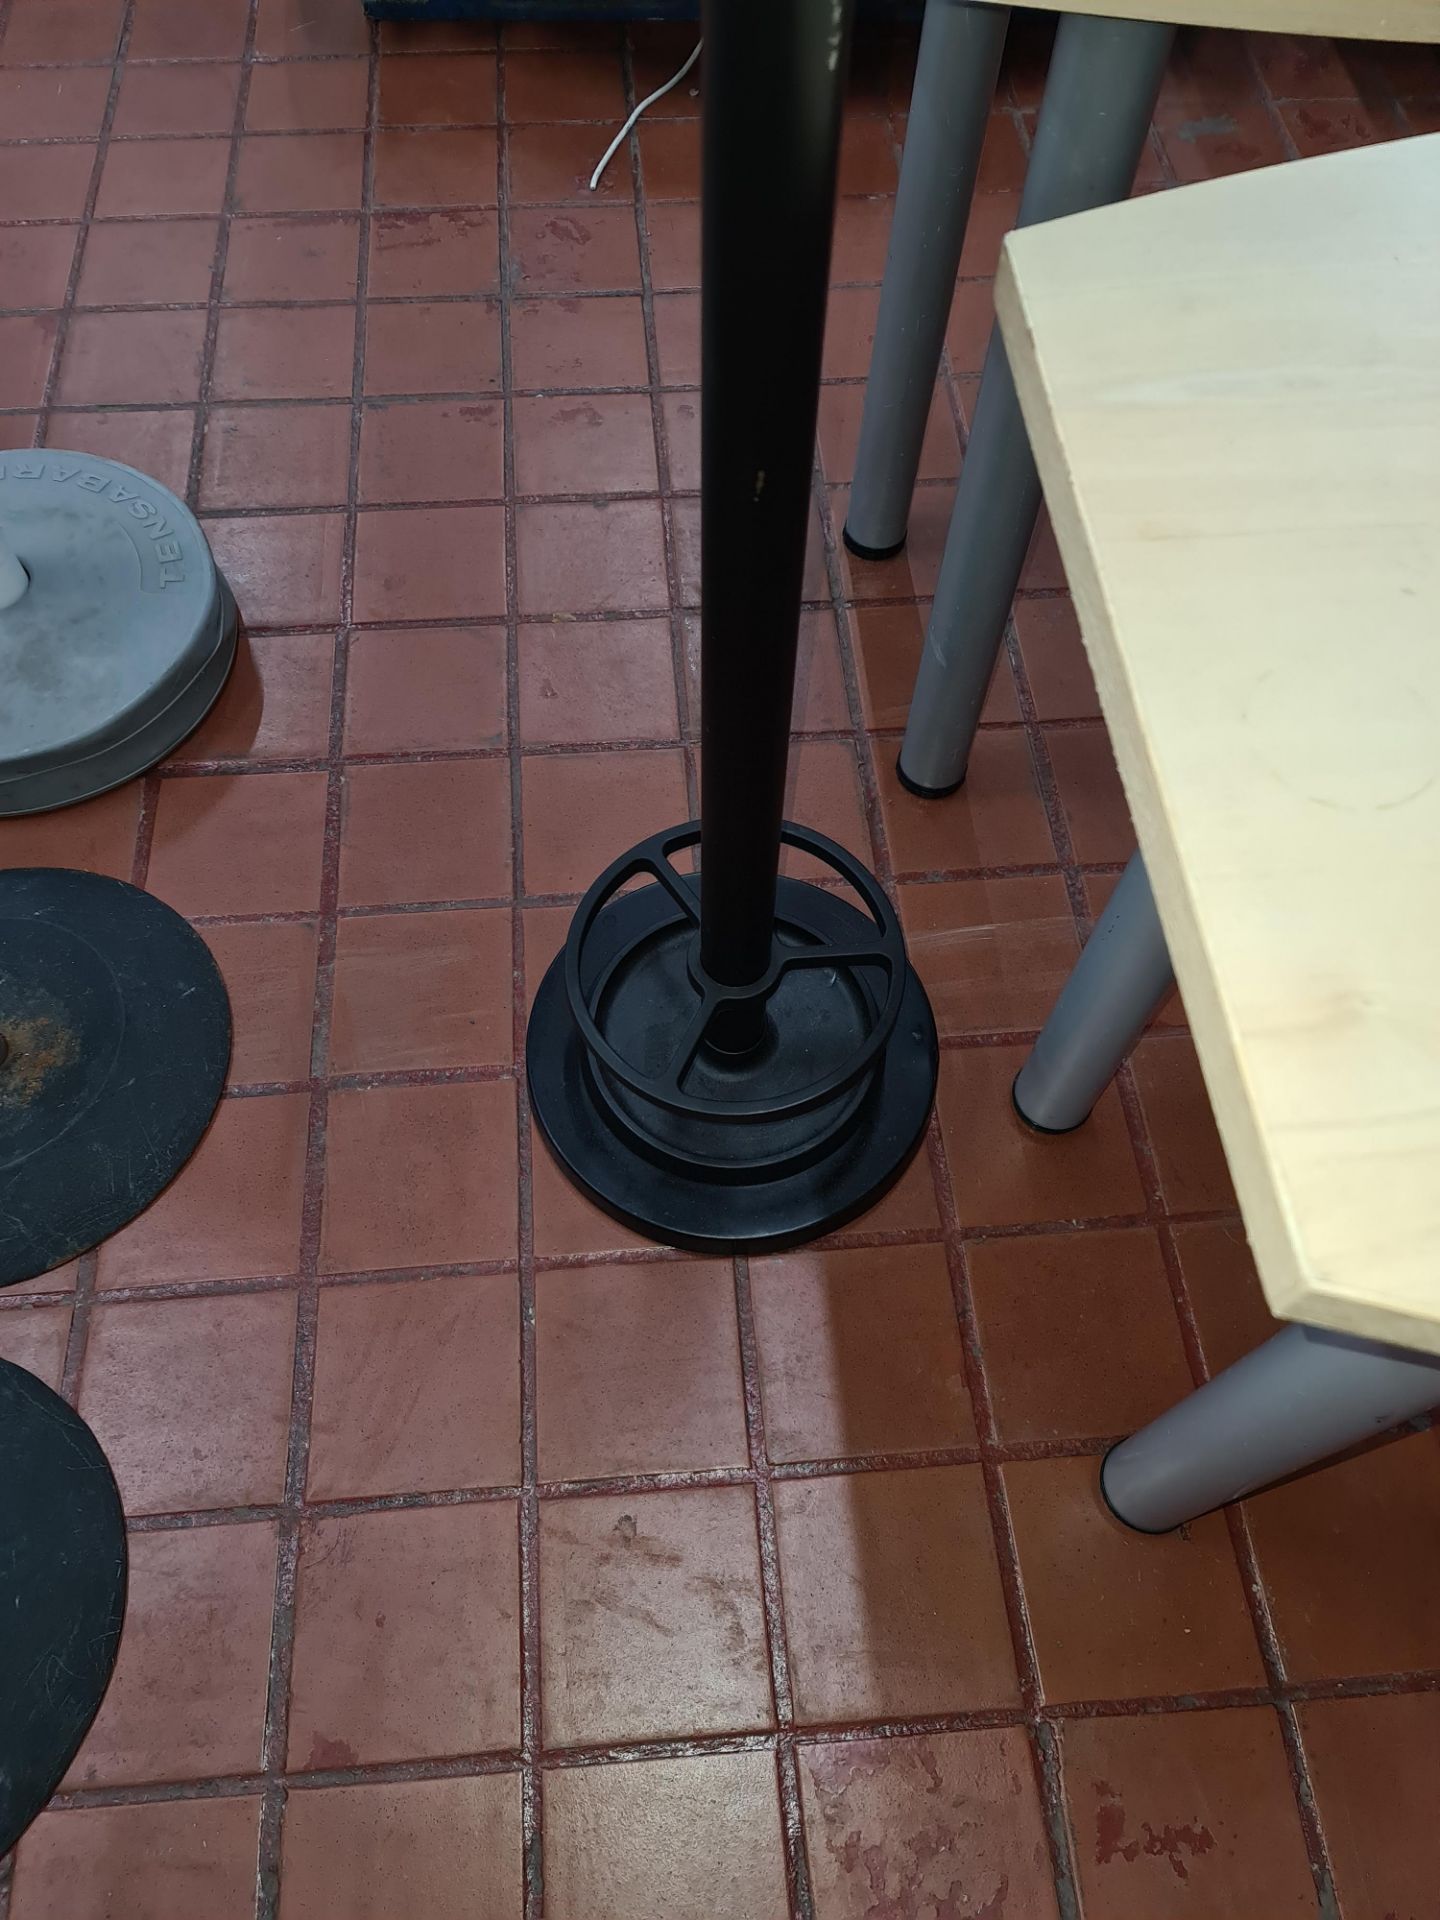 Black coat/umbrella stand - Image 3 of 3